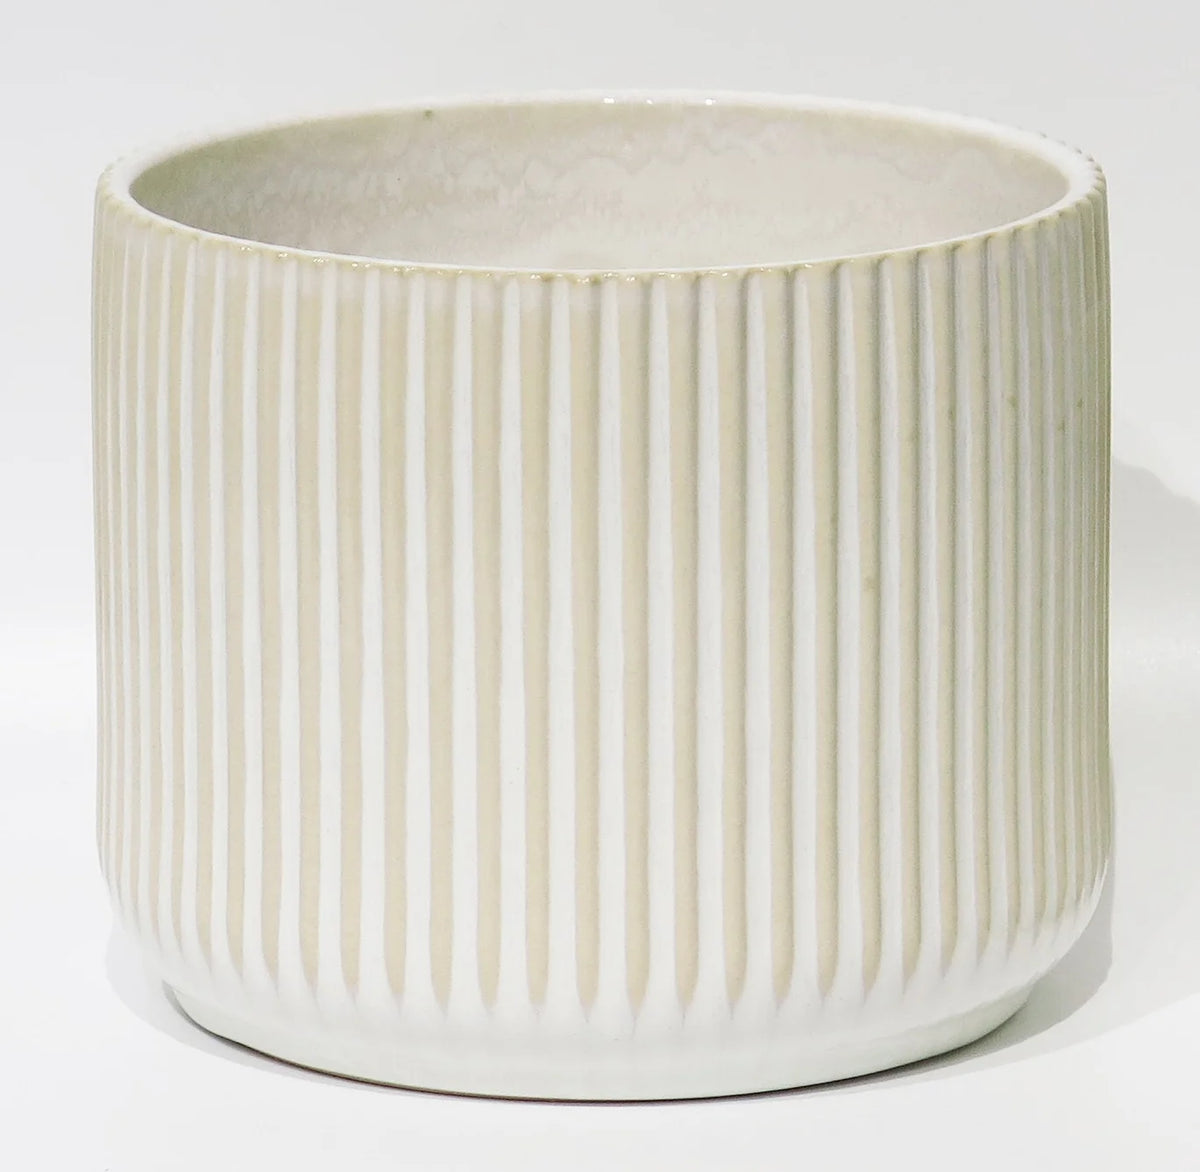 Pot Beige ligné - 6.9"DX5.9"H White Ceramic Pot